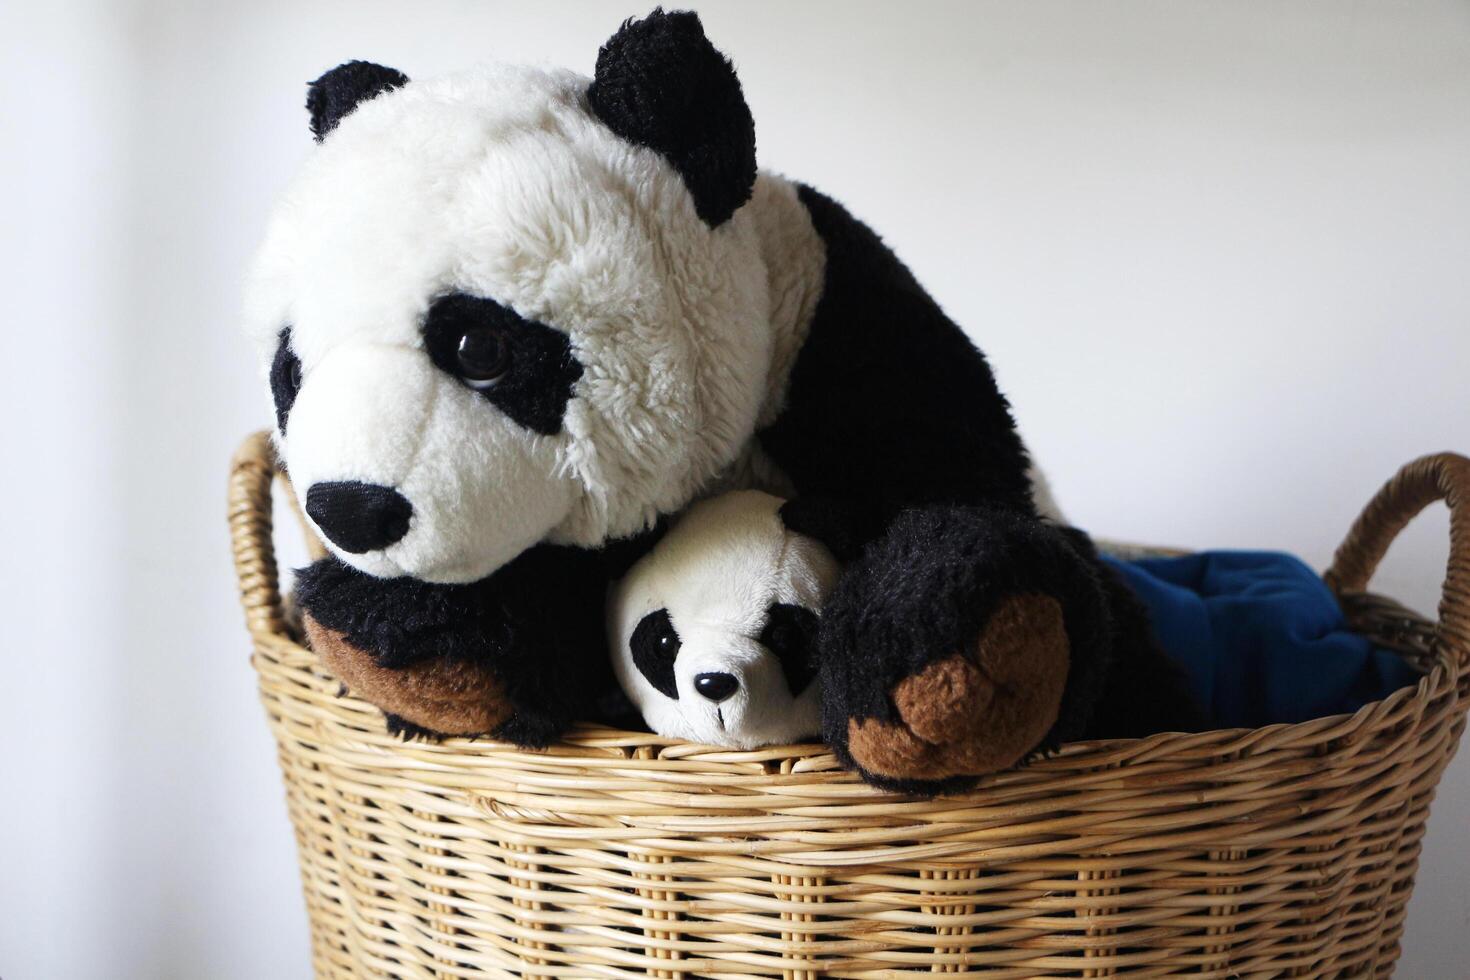 Panda poupée noir et blanc dans osier panier pour blanchisserie préparation. photo